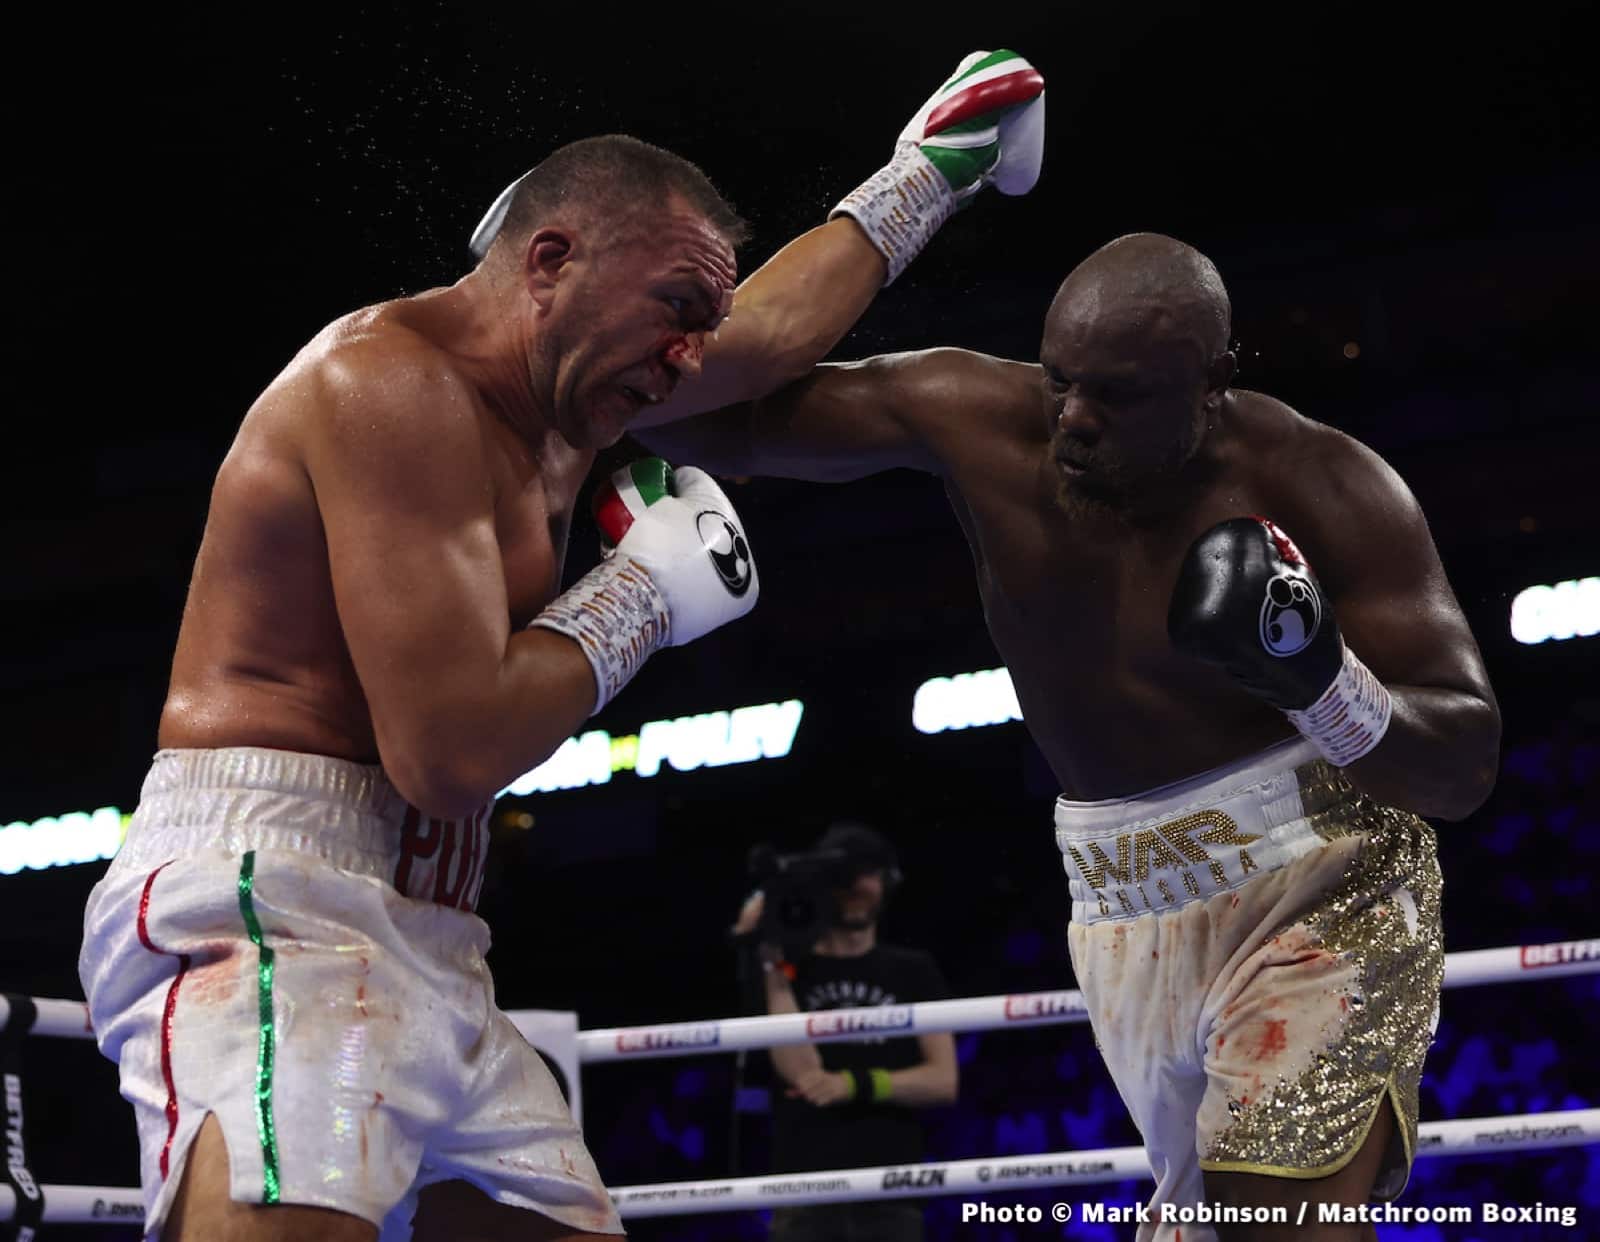 Derek Chisora boxing image / photo